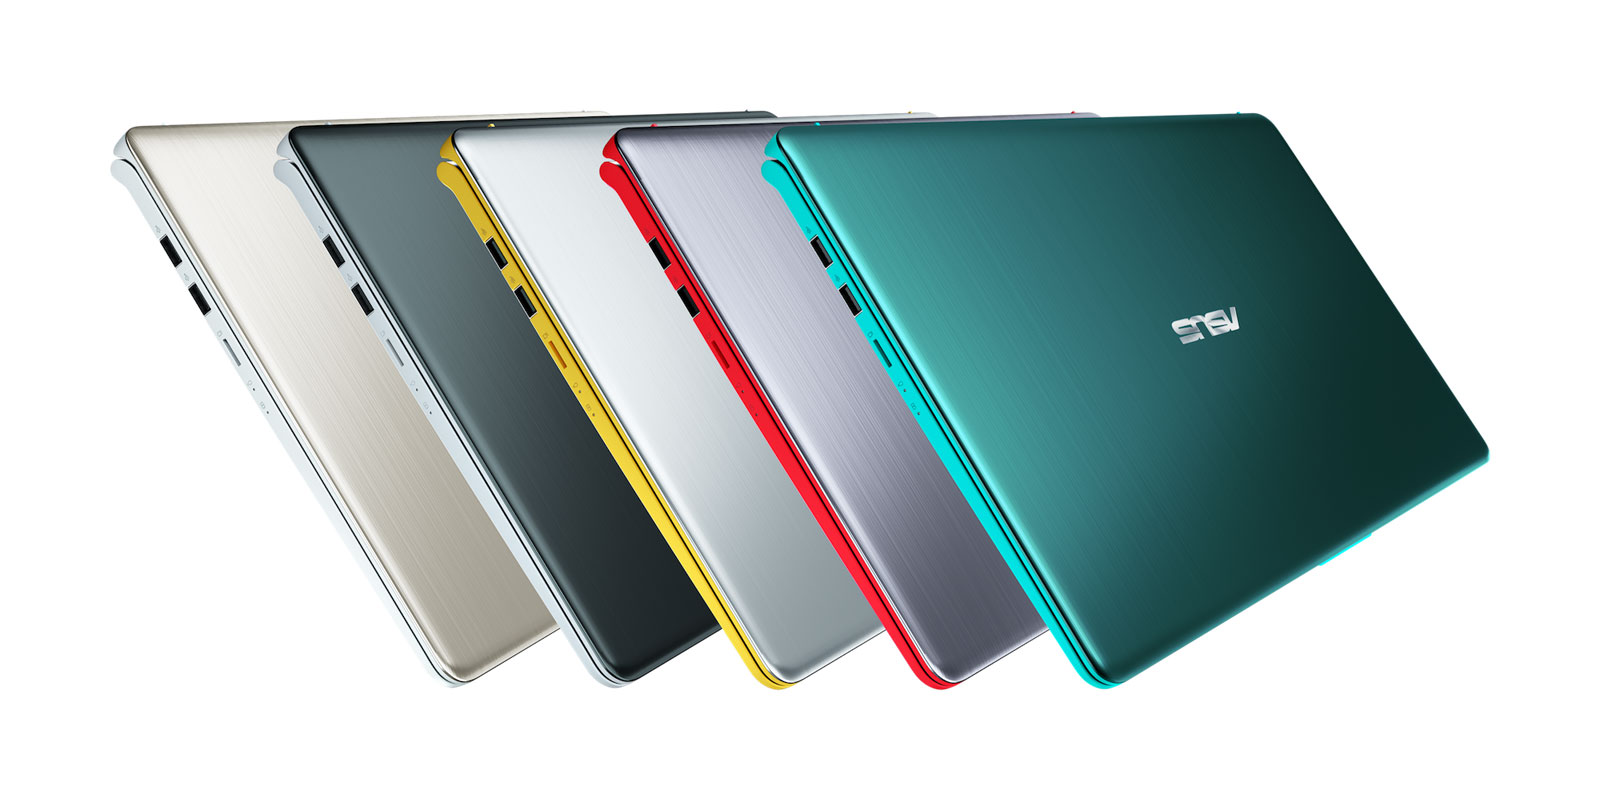 ASUS Zenbook S Laptop Announced With Unique Hinge Design